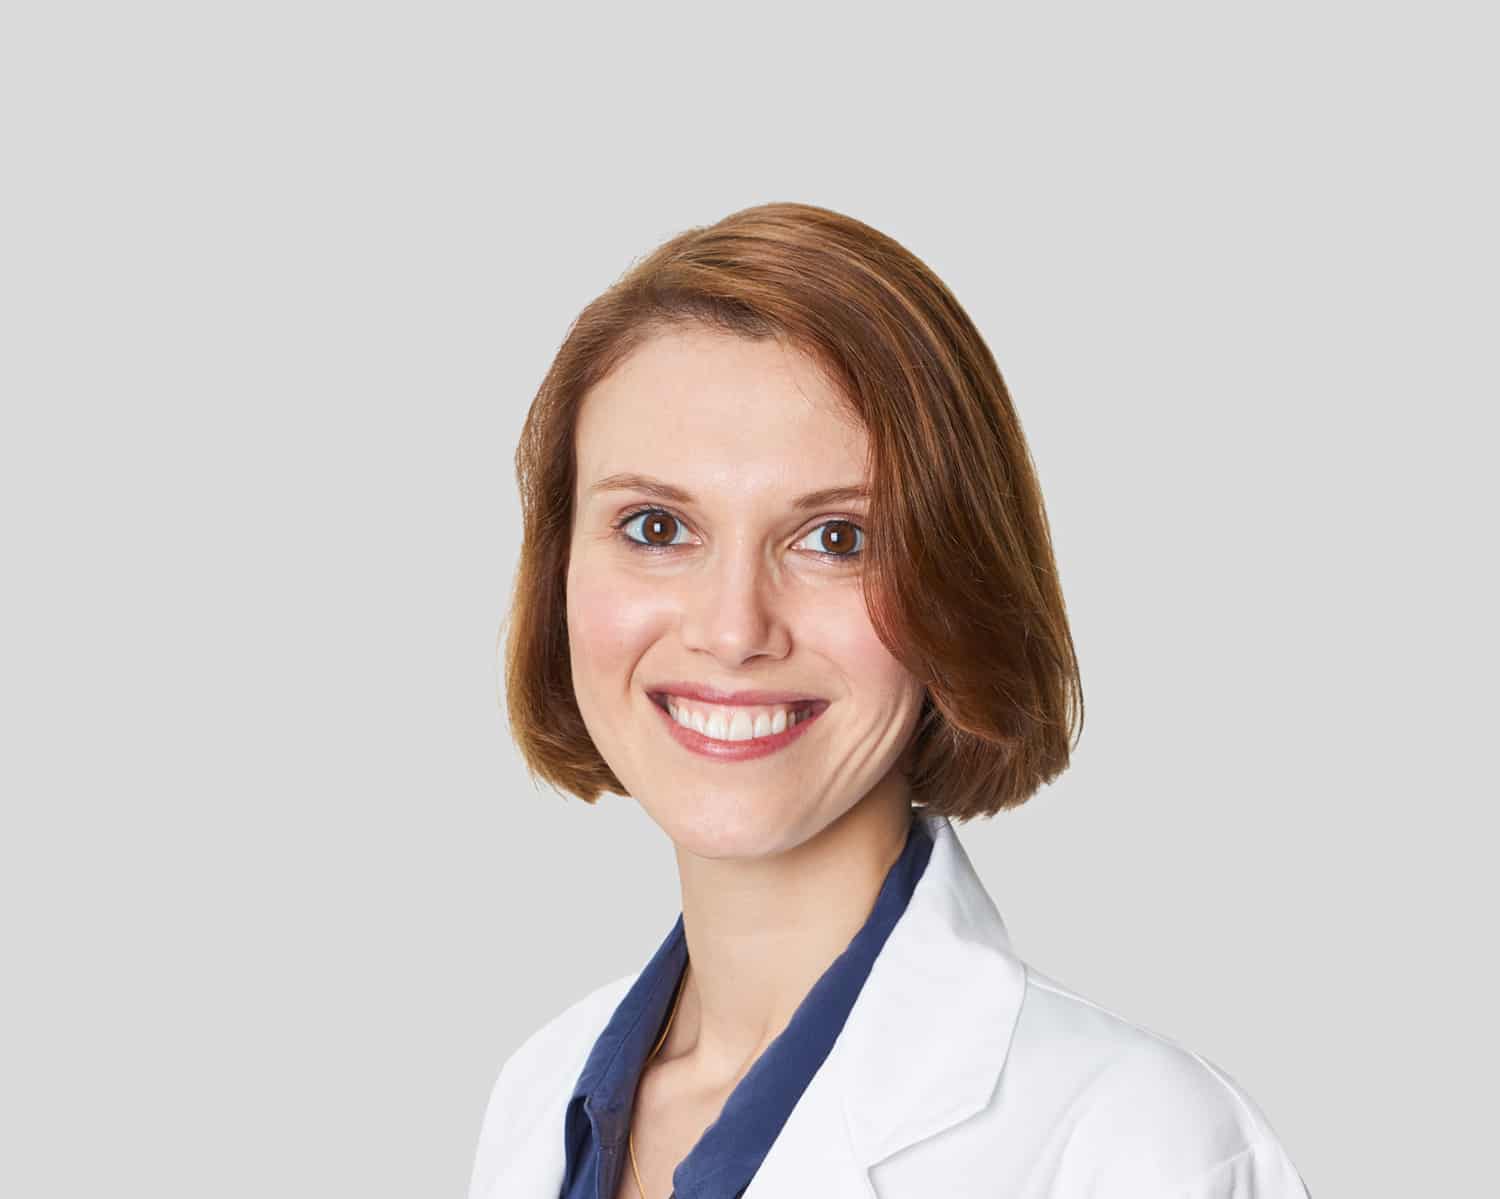 Dr. Lauren Saunders